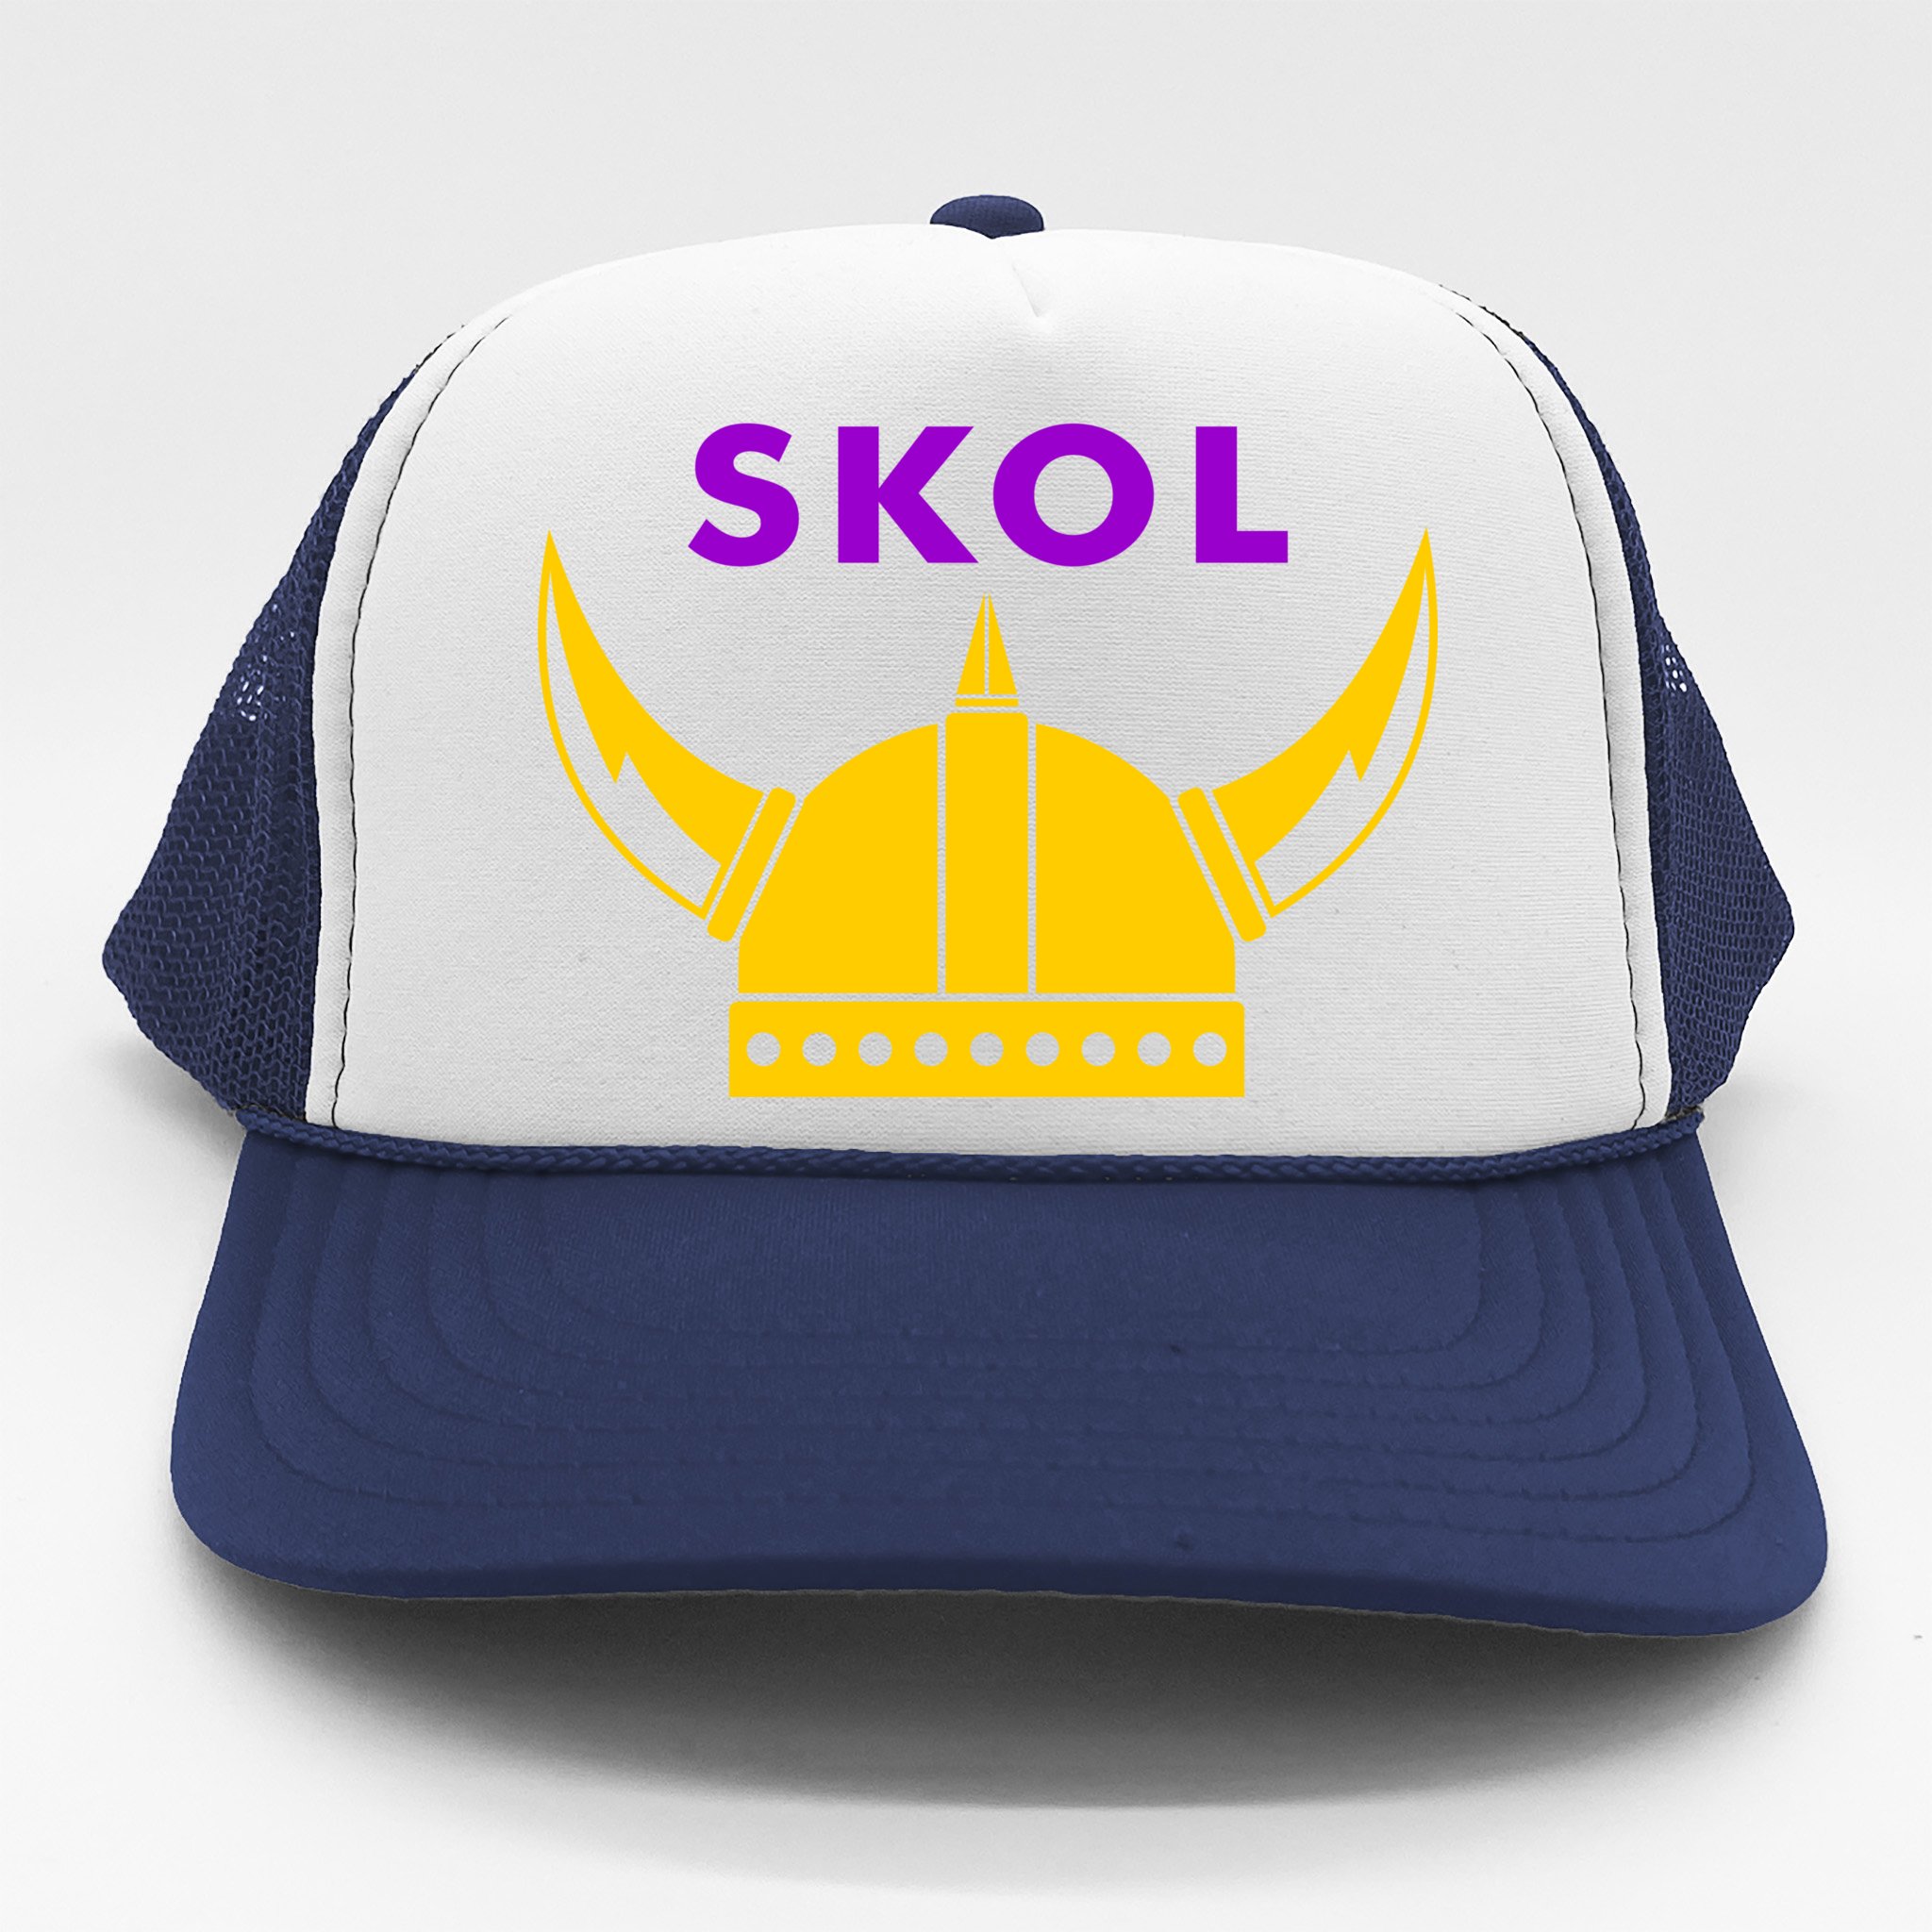 Skol Viking Helmet Minneapolis Miracle Trucker Hat